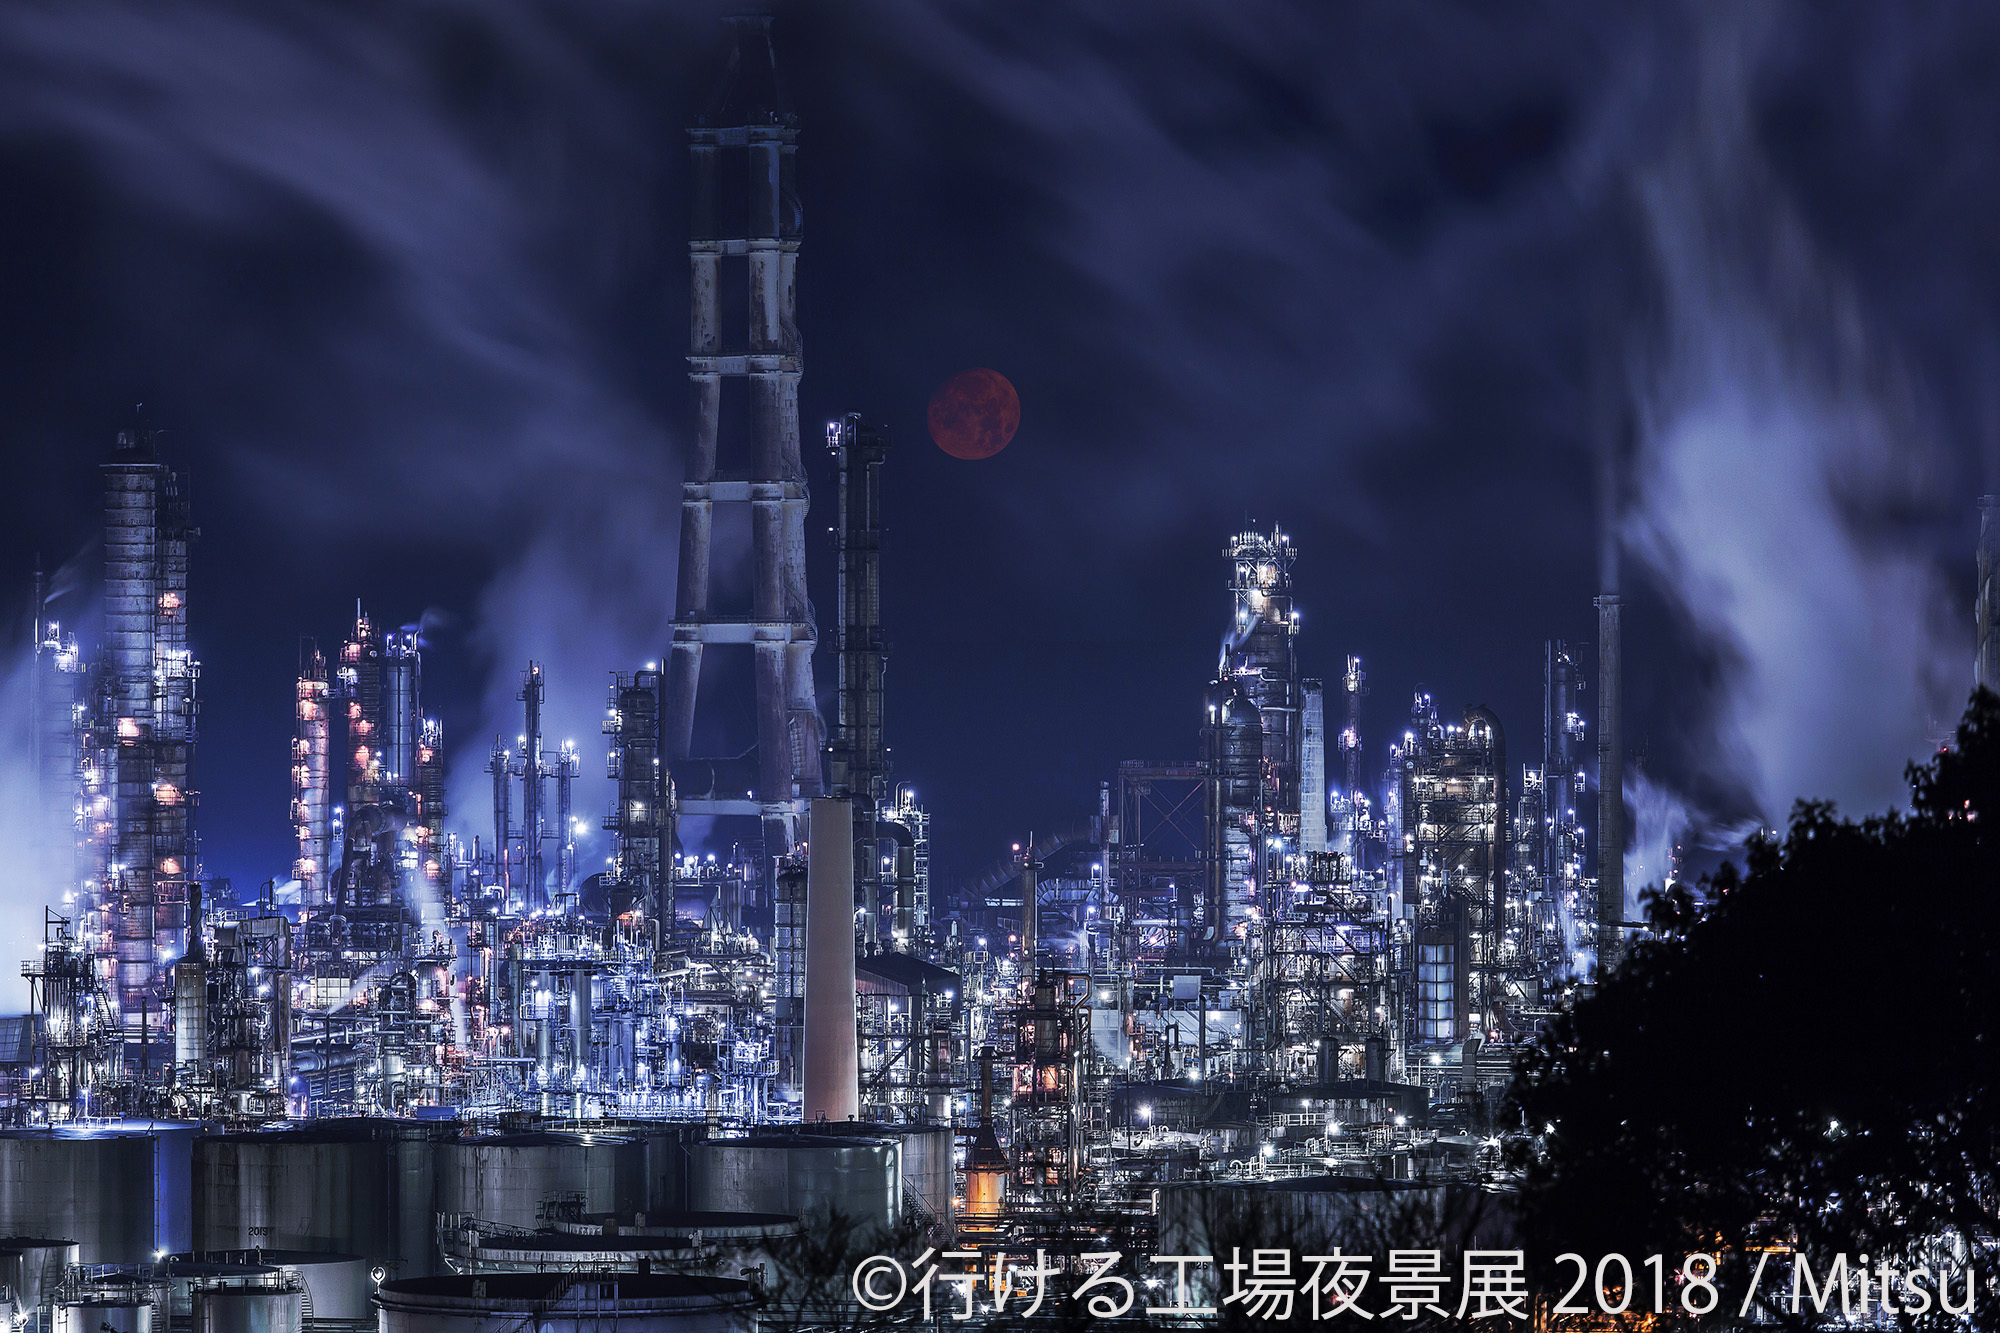 画像 近未来感あふれる 工場夜景 約0作品を アクセス情報付きで展示 東京 名古屋で写真展開催 の画像1 7 Spice エンタメ特化型情報メディア スパイス